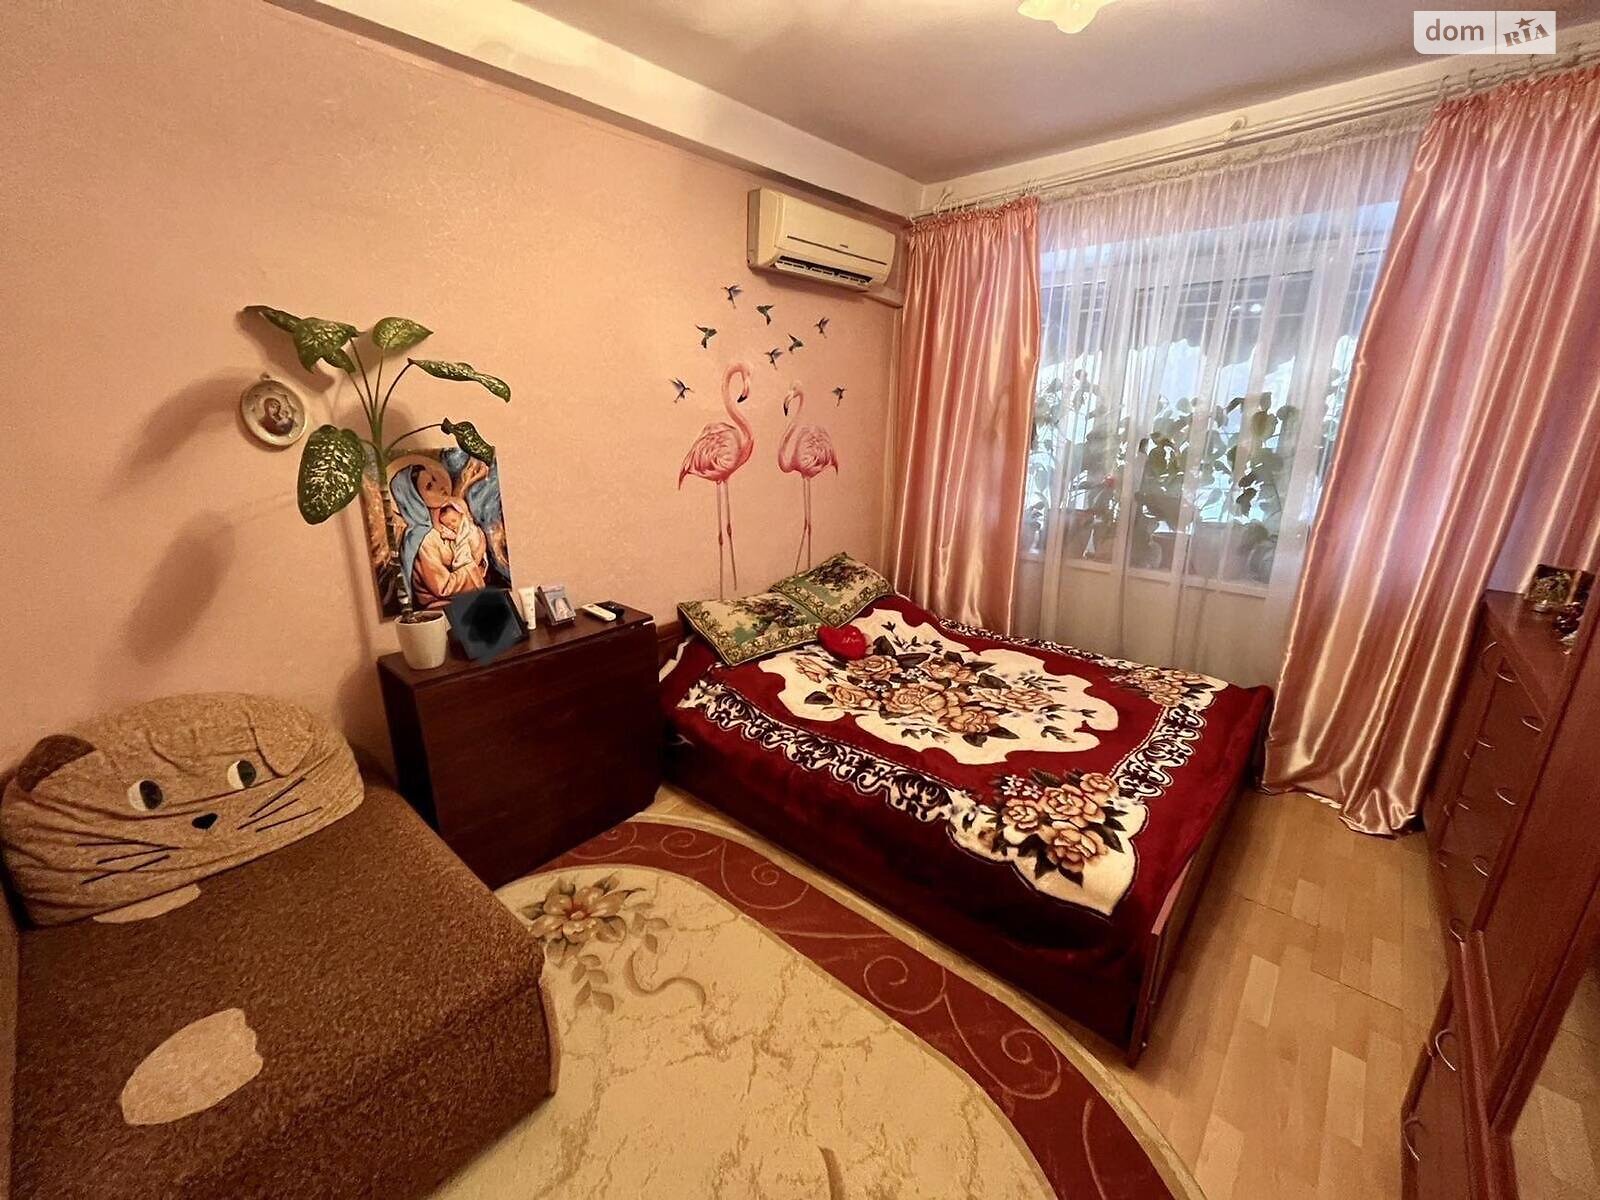 Кімната в Одесі на вул. Маршала Малиновського 65 в районі Черемушки на продаж фото 1